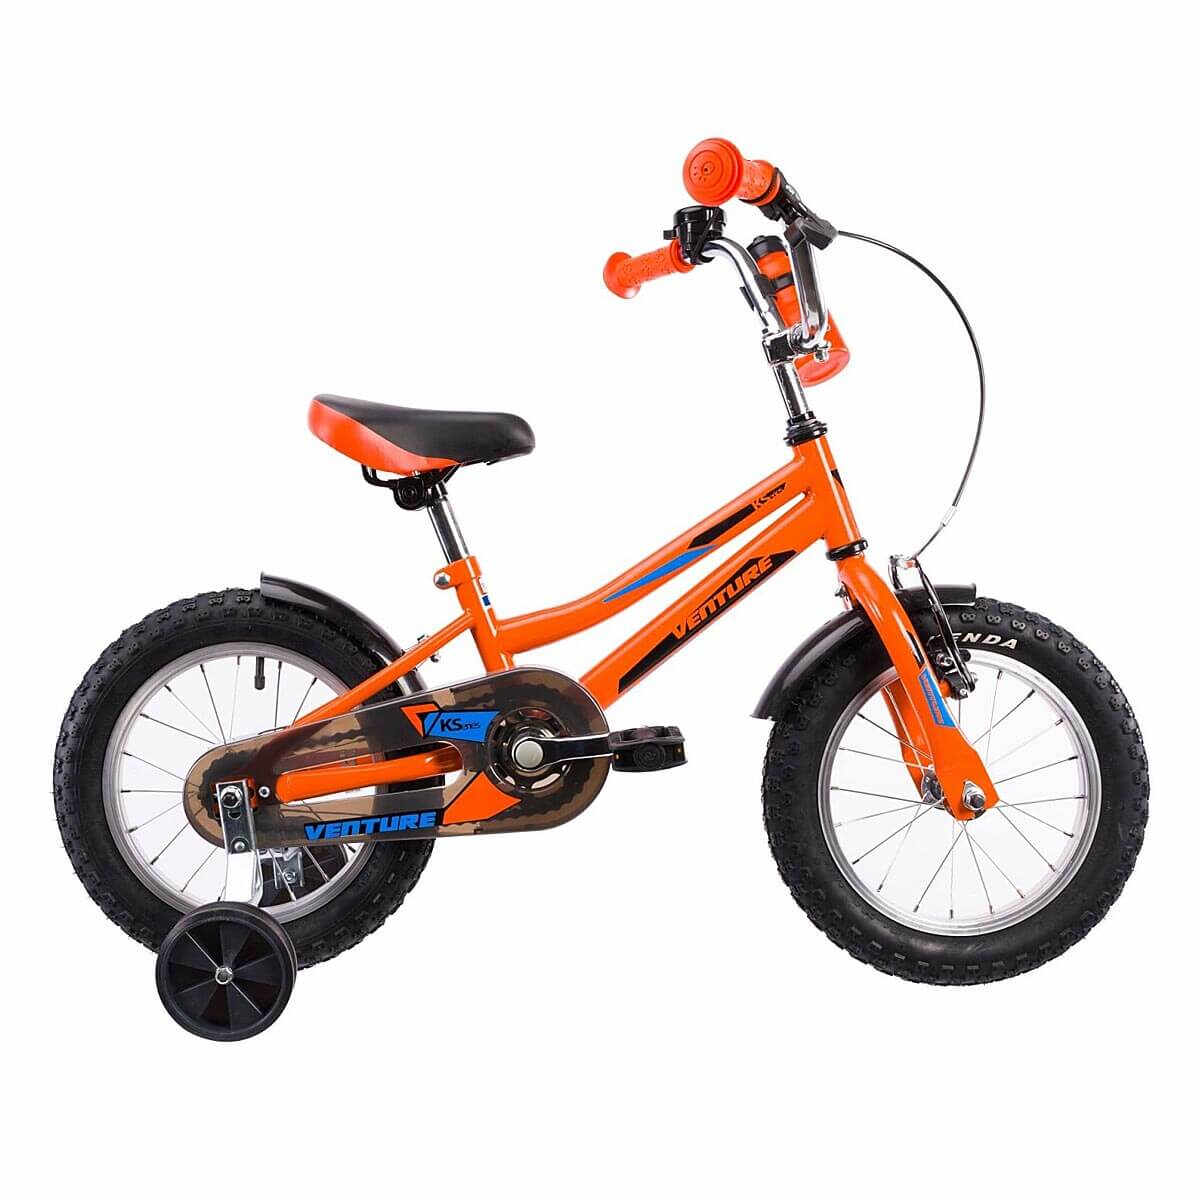 Bicicleta Copii Venture 1417 - 14 Inch, Portocaliu